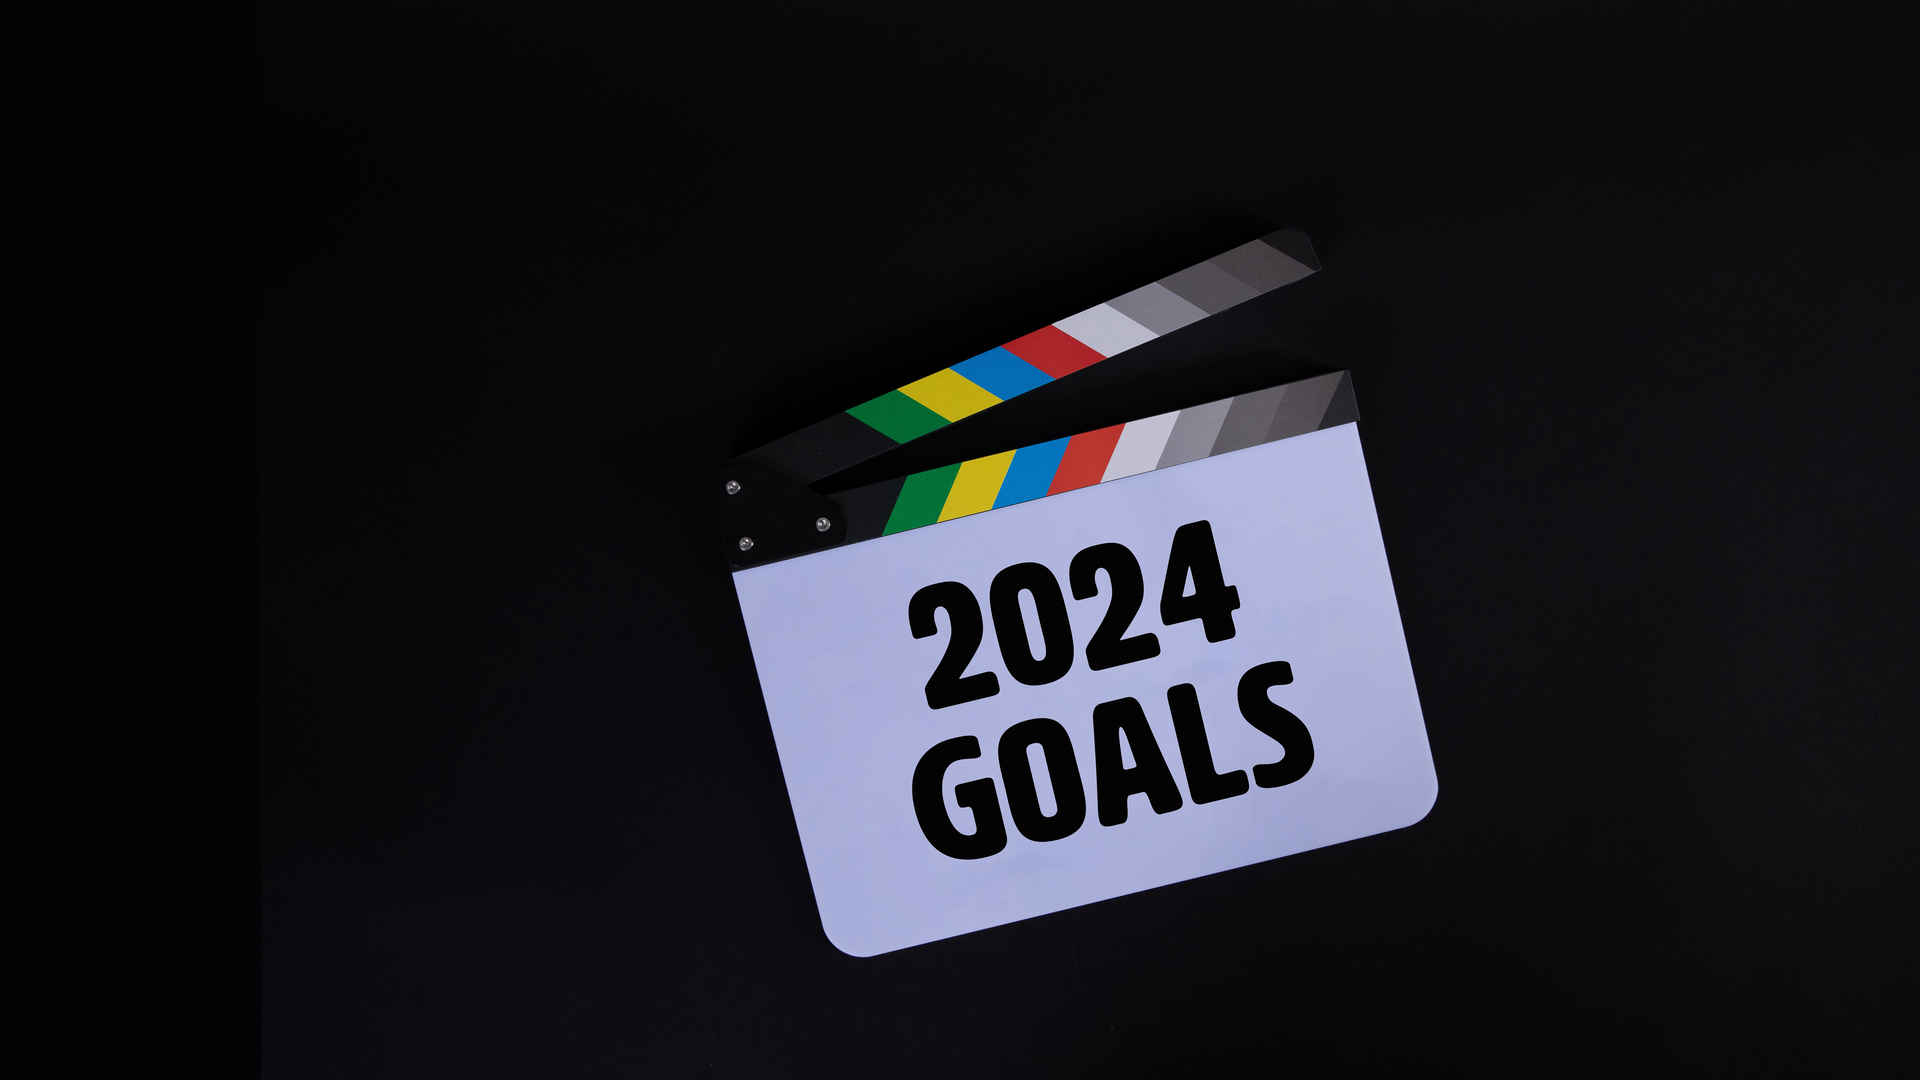 2024 龙年 goals 目标 4k桌面背景图片